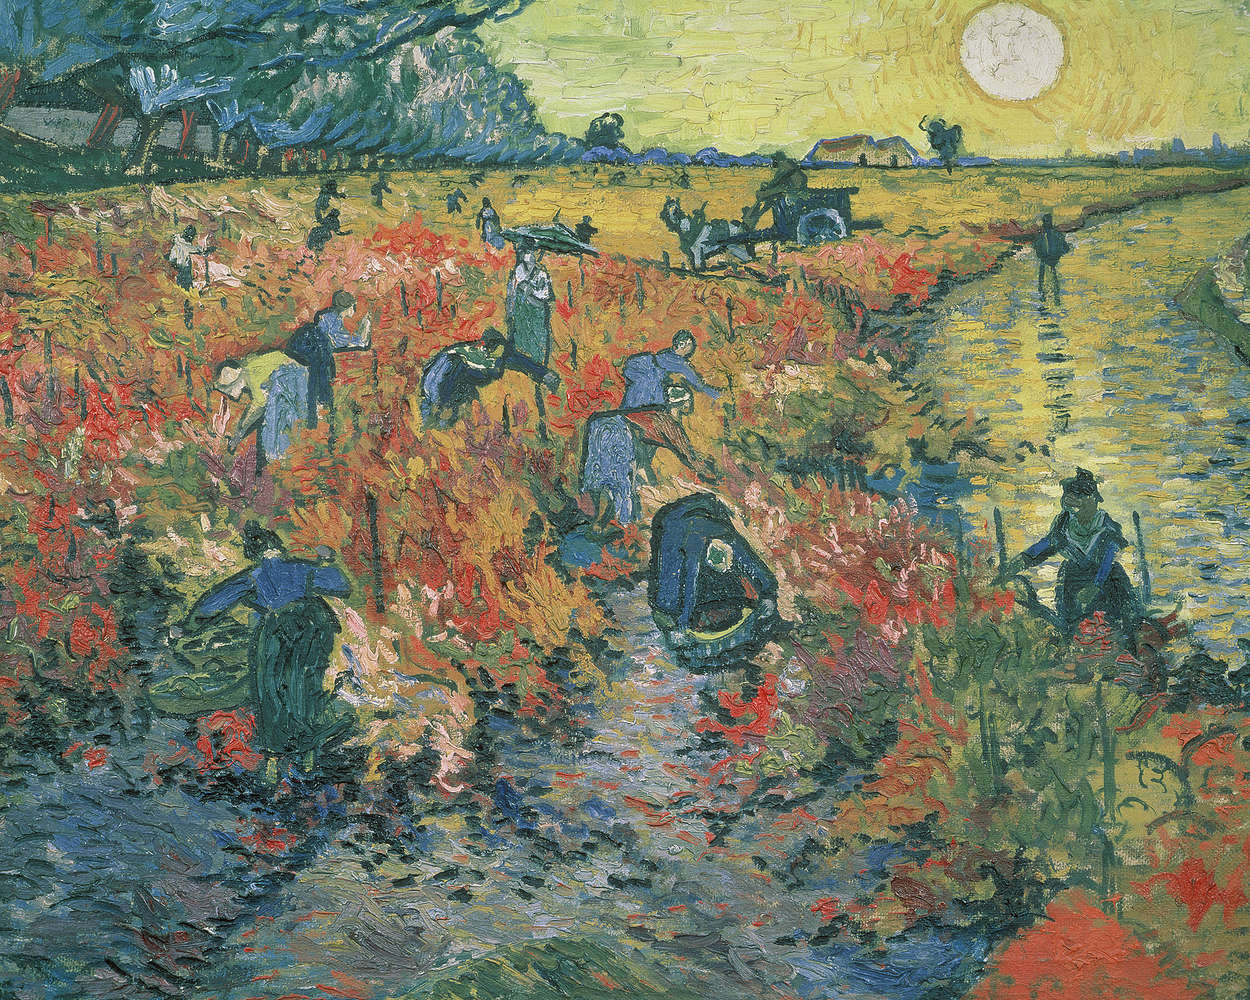             Papier peint panoramique "Vignes rouges" de Vincent van Gogh
        